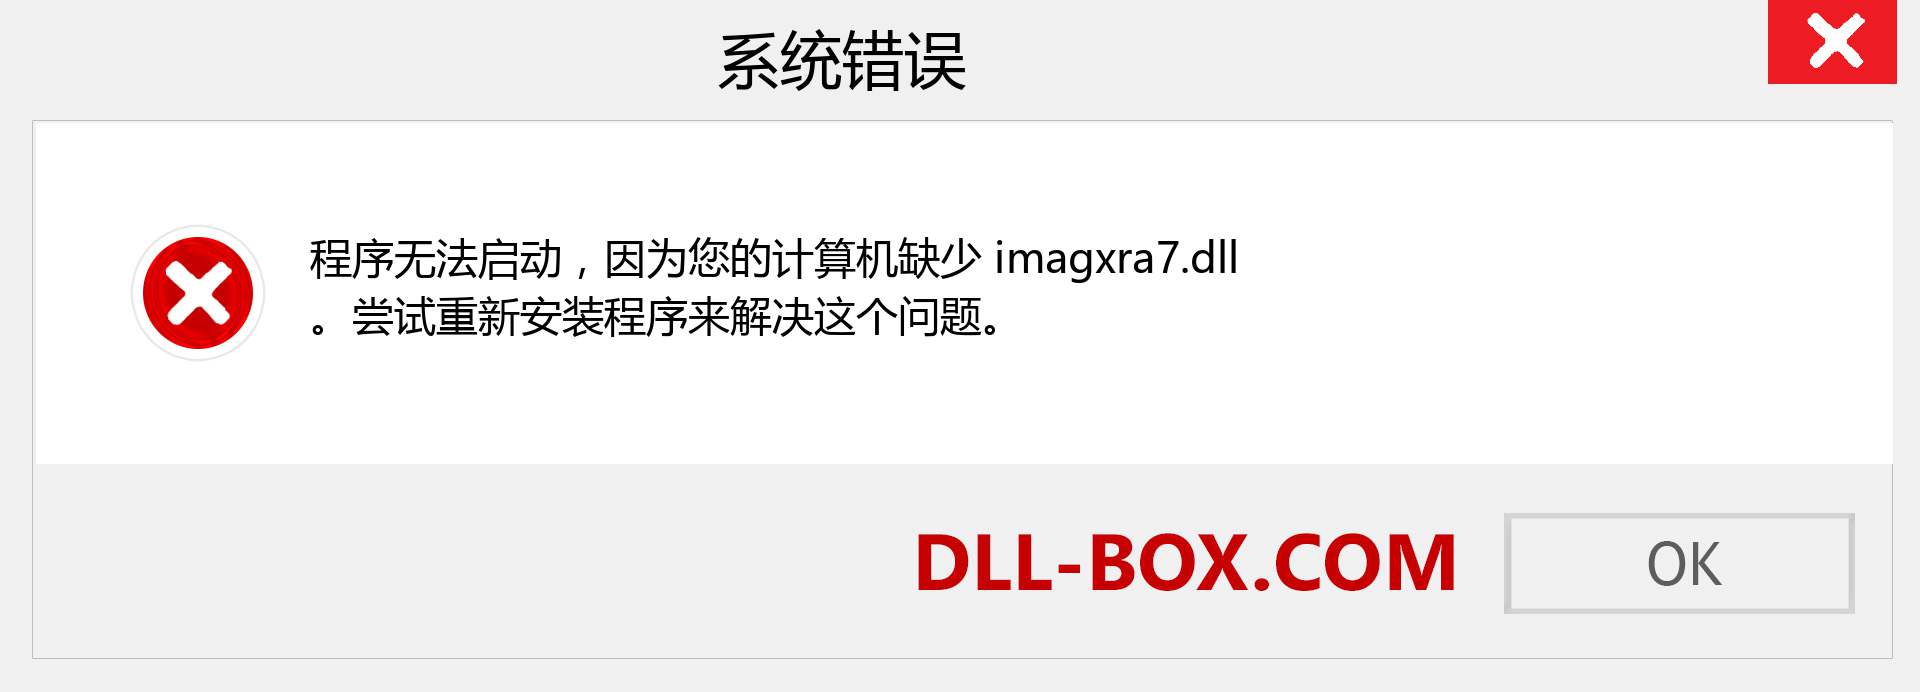 imagxra7.dll 文件丢失？。 适用于 Windows 7、8、10 的下载 - 修复 Windows、照片、图像上的 imagxra7 dll 丢失错误